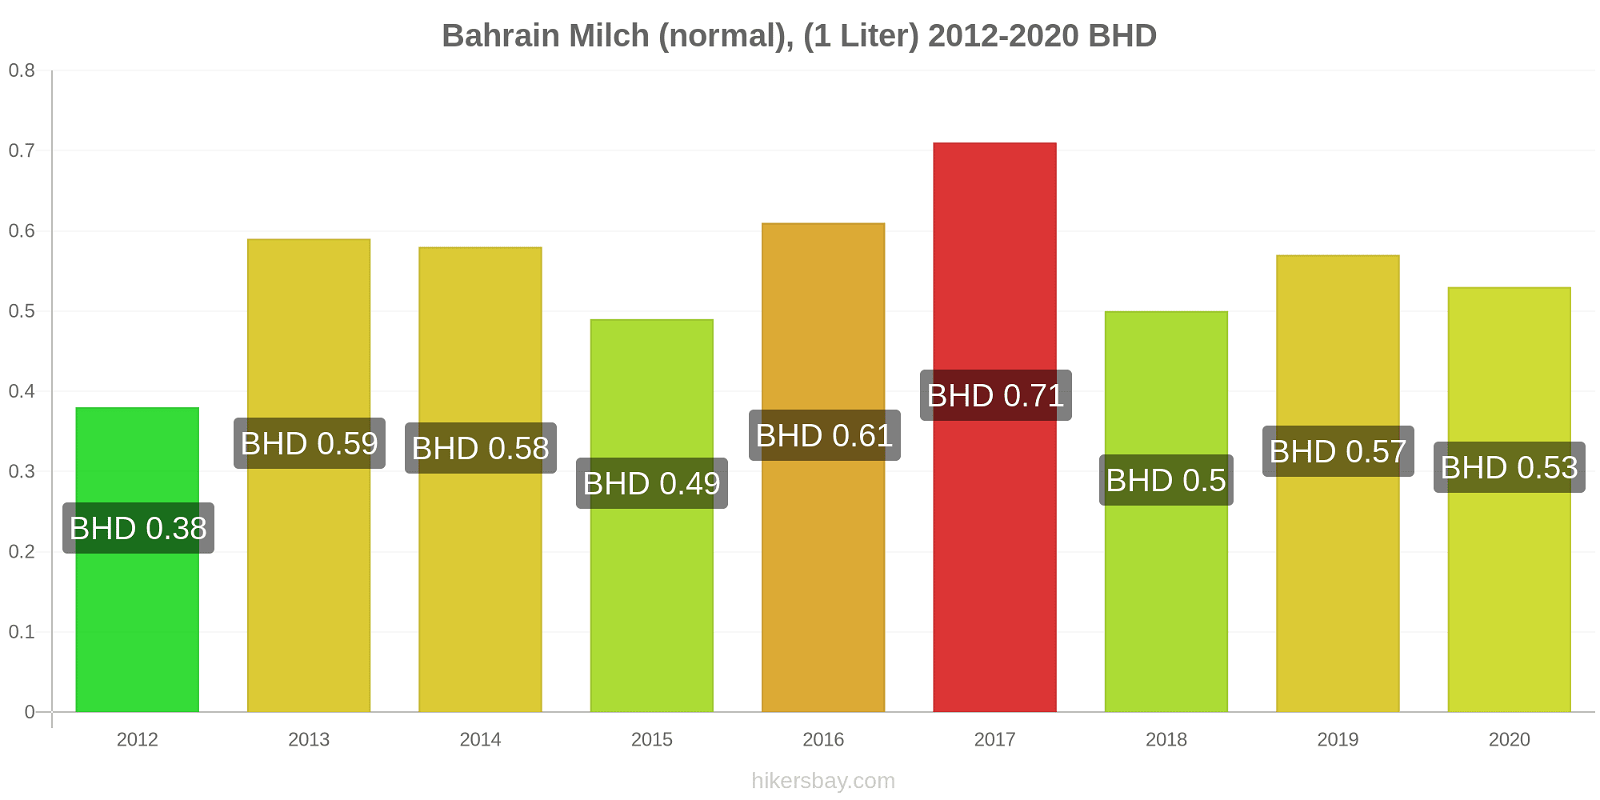 Bahrain Preisänderungen (Regulär), Milch (1 Liter) hikersbay.com